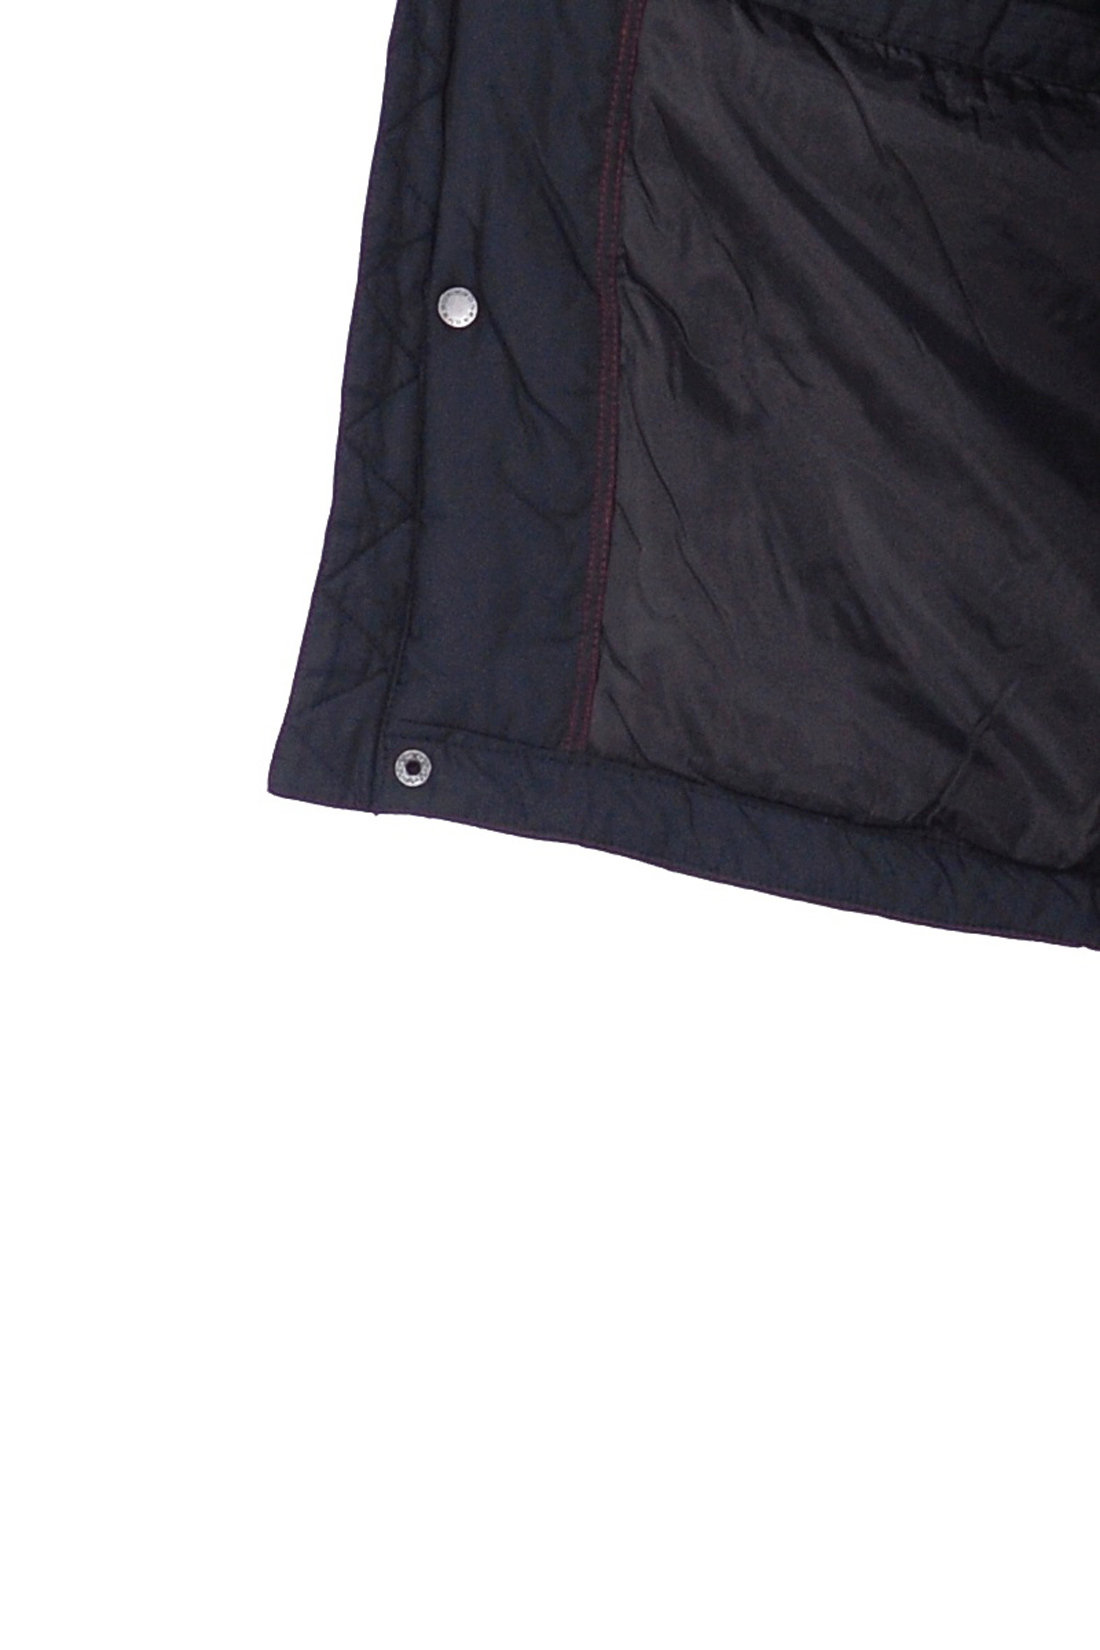 Куртка эргономичного кроя (арт. baon B538513), размер 3XL, цвет черный Куртка эргономичного кроя (арт. baon B538513) - фото 3